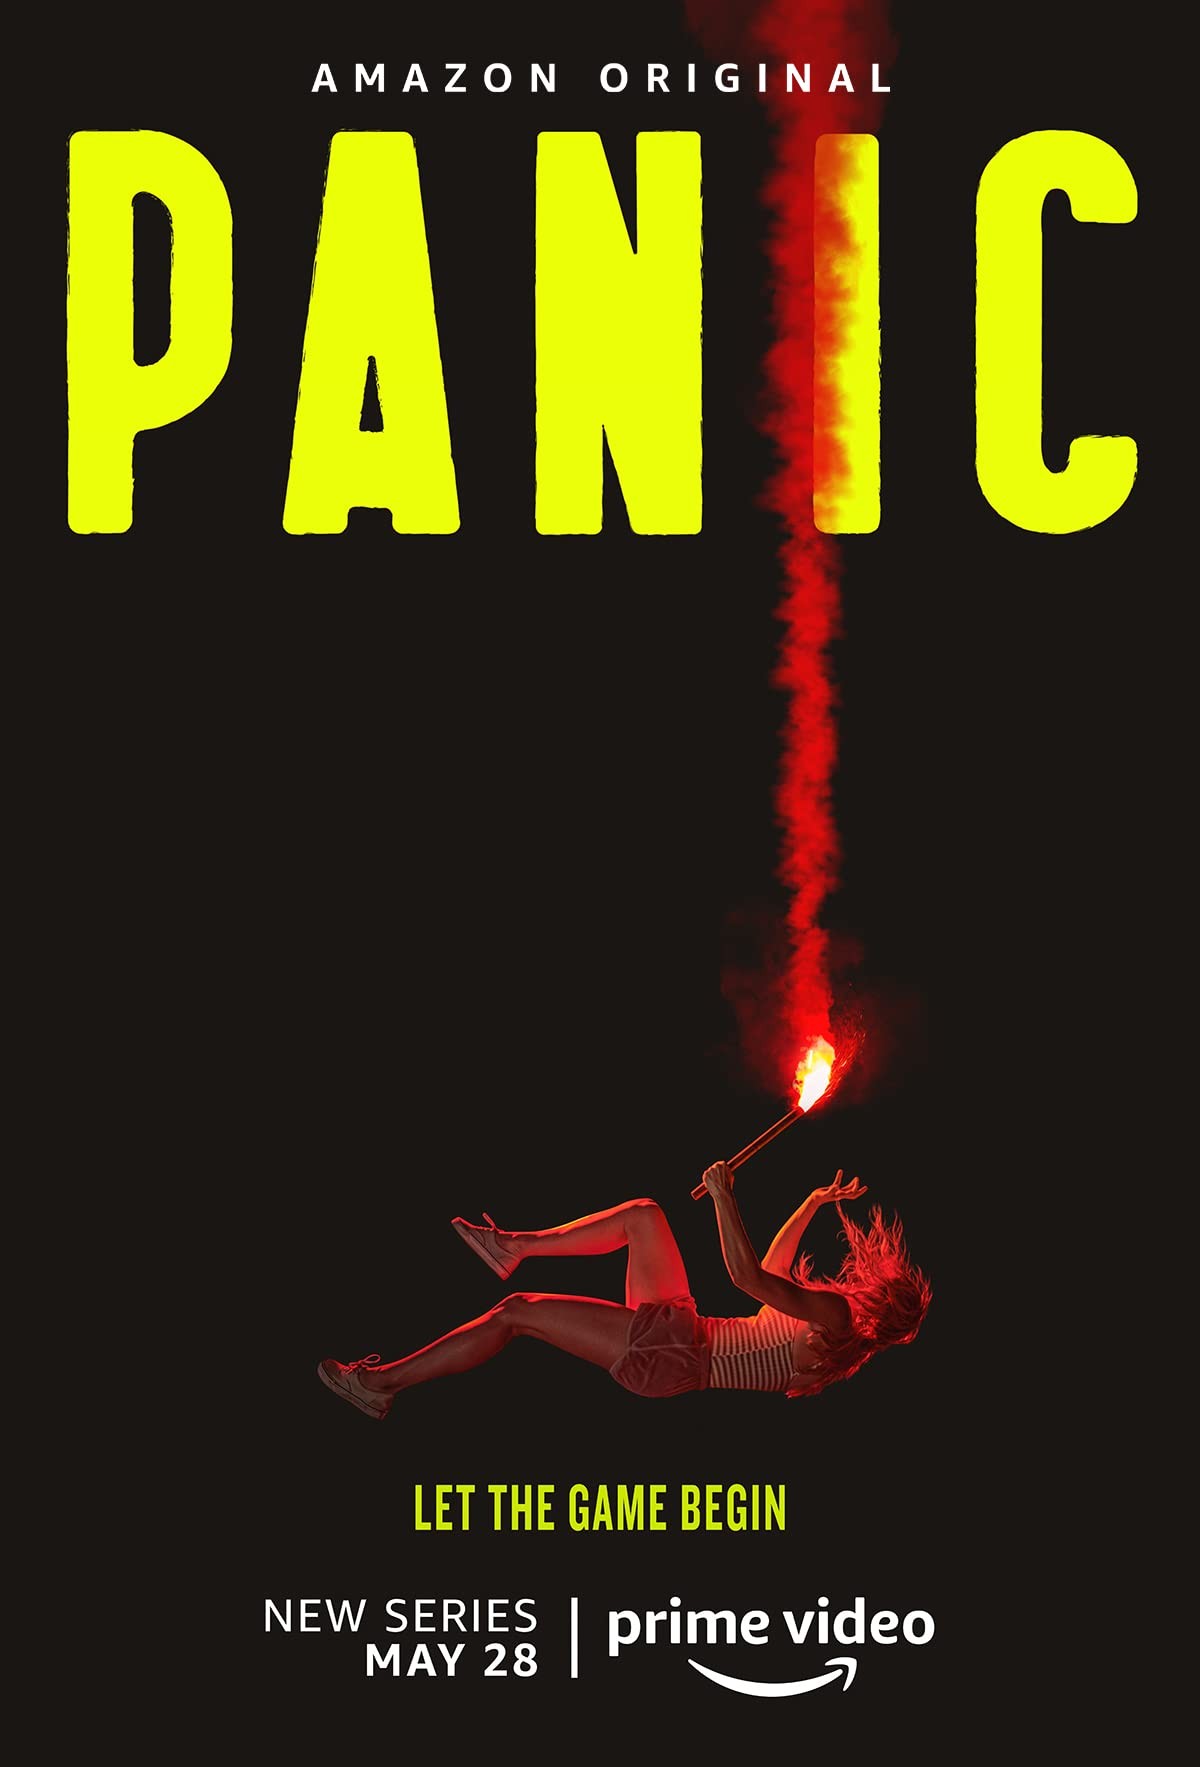 Паника / Panic